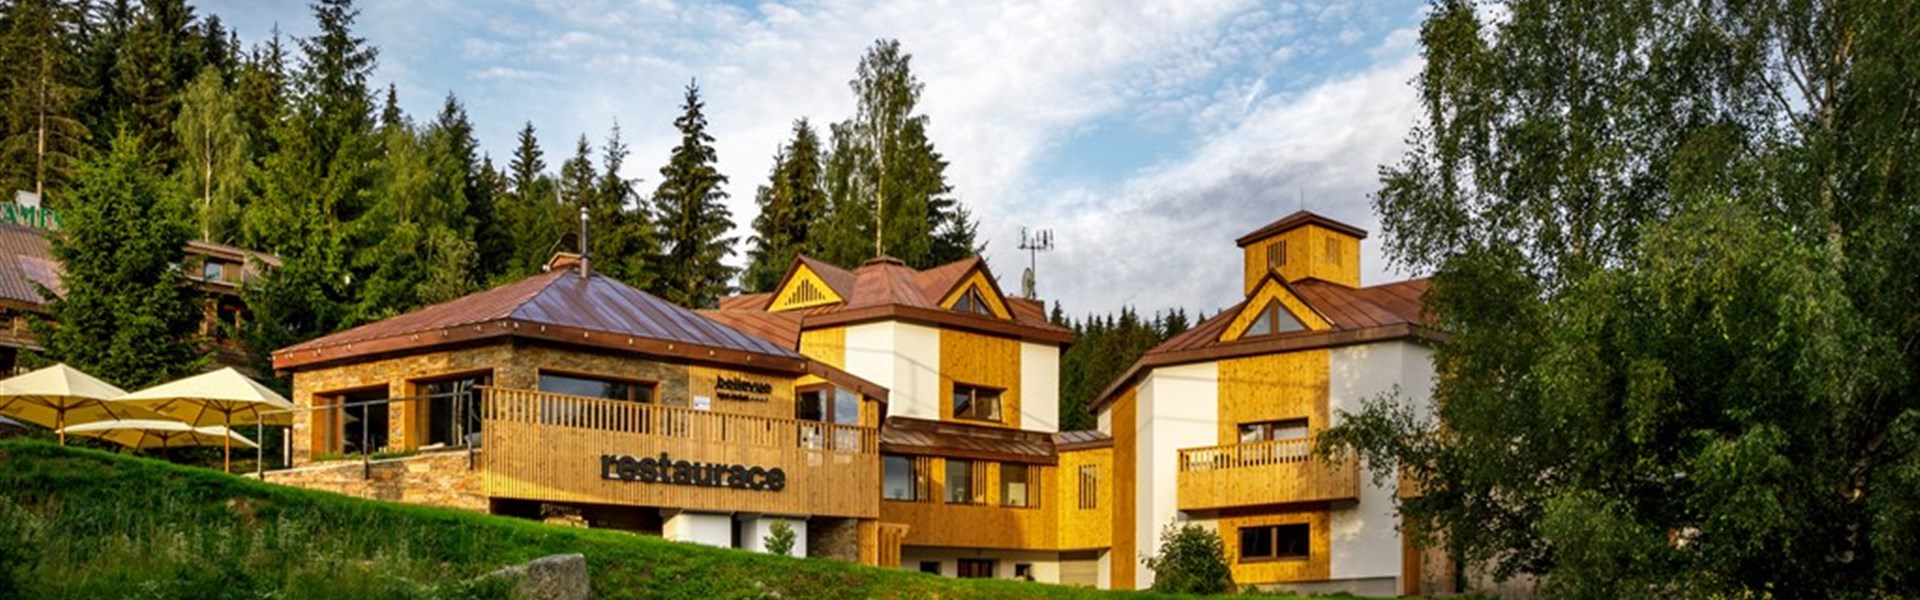 Marco Polo - Spa Hotel Bellevue Harrachov - 